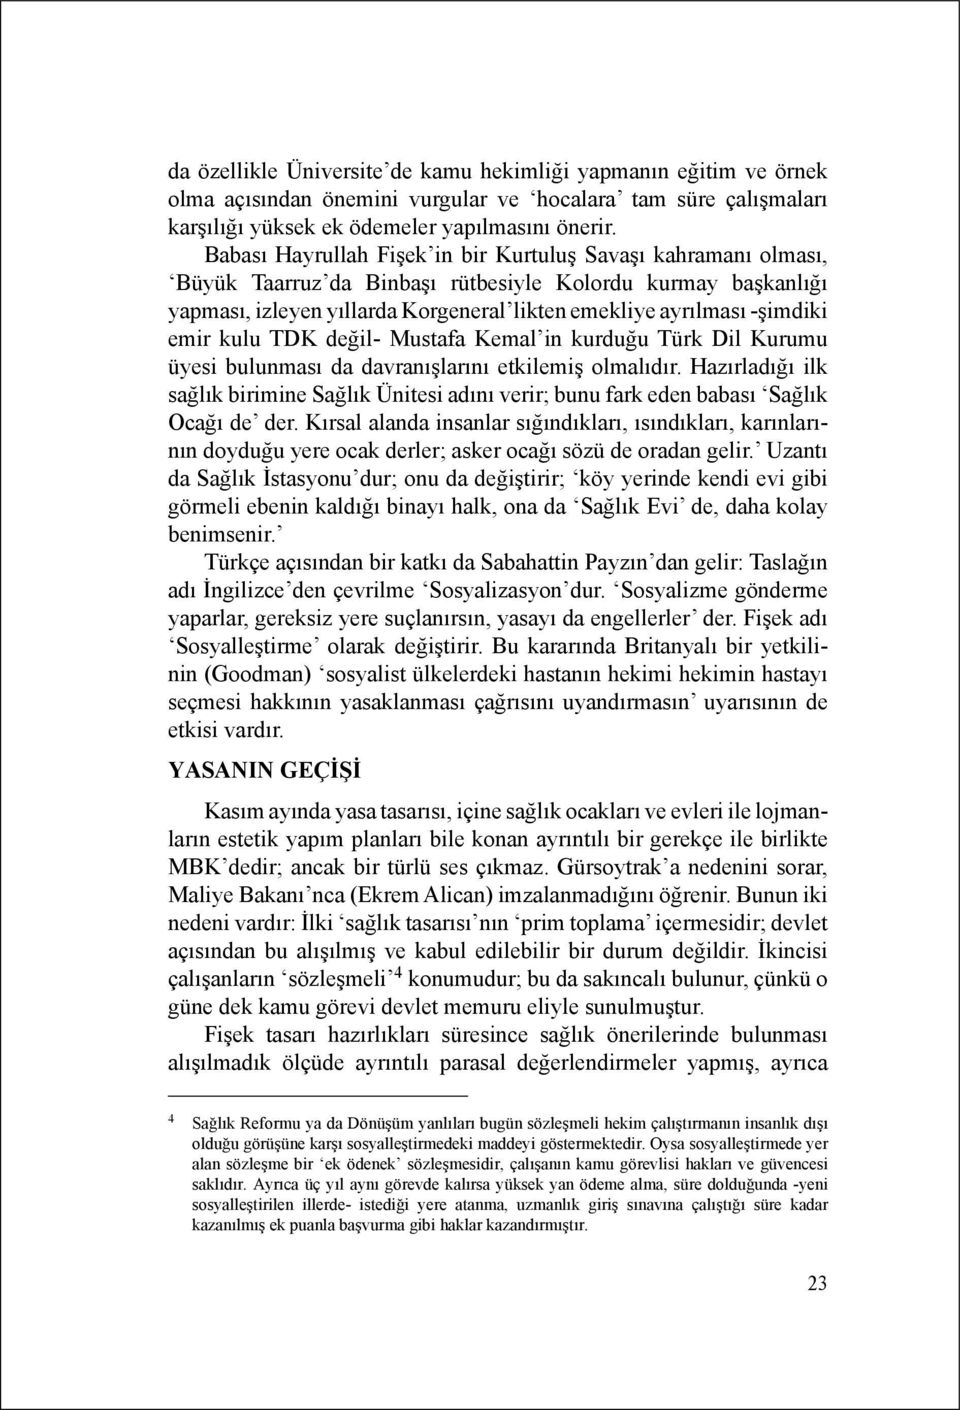 emir kulu TDK değil- Mustafa Kemal in kurduğu Türk Dil Kurumu üyesi bulunması da davranışlarını etkilemiş olmalıdır.